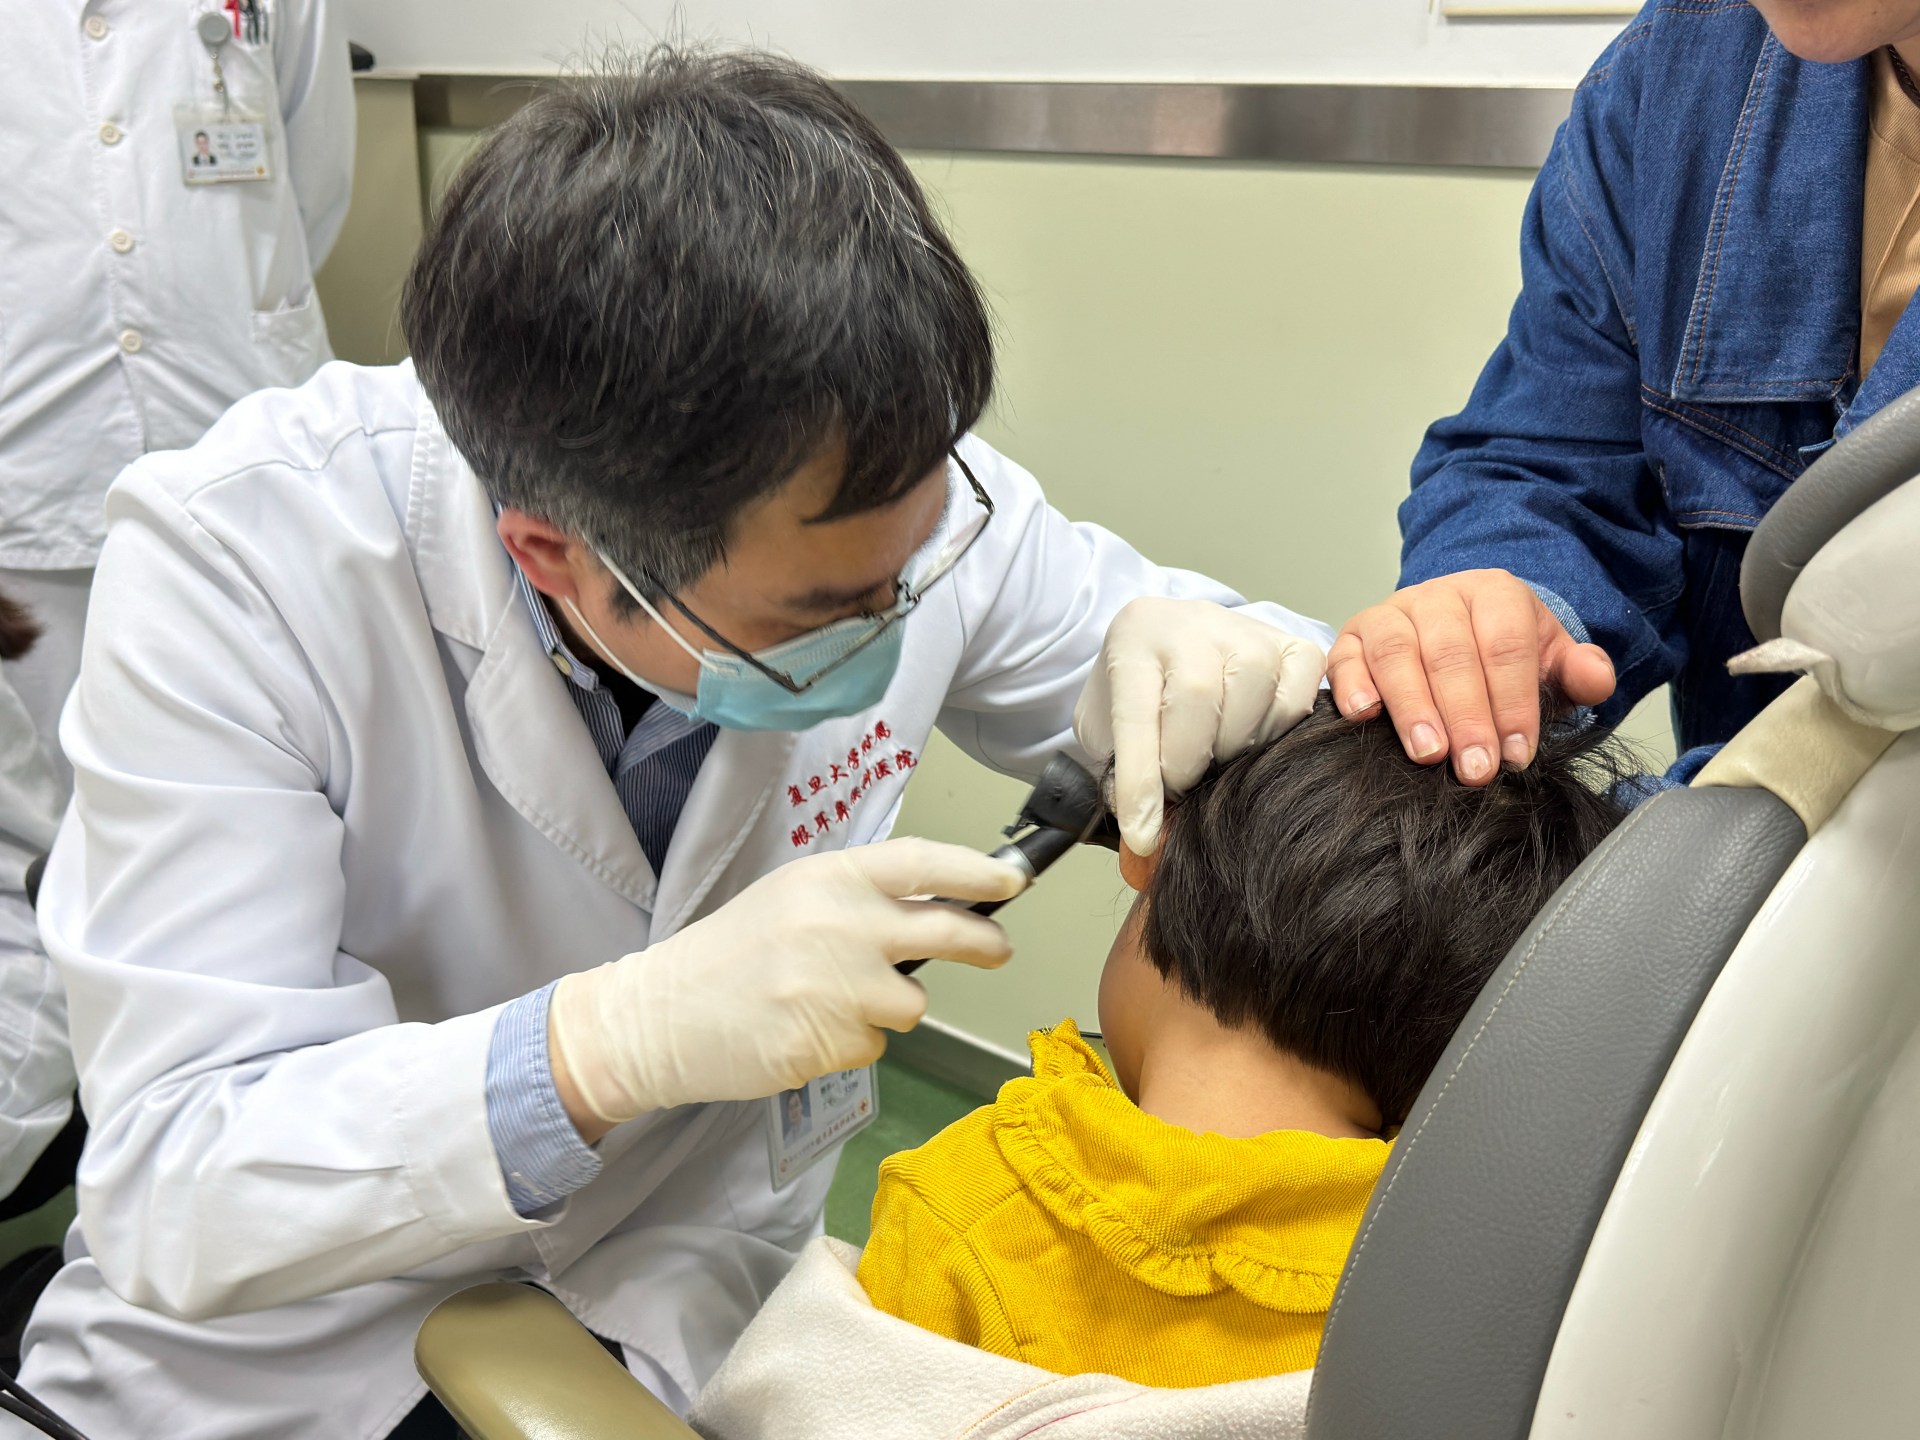 علاج جيني في الصين يوفر أملا للأطفال الصم | صحة – البوكس نيوز